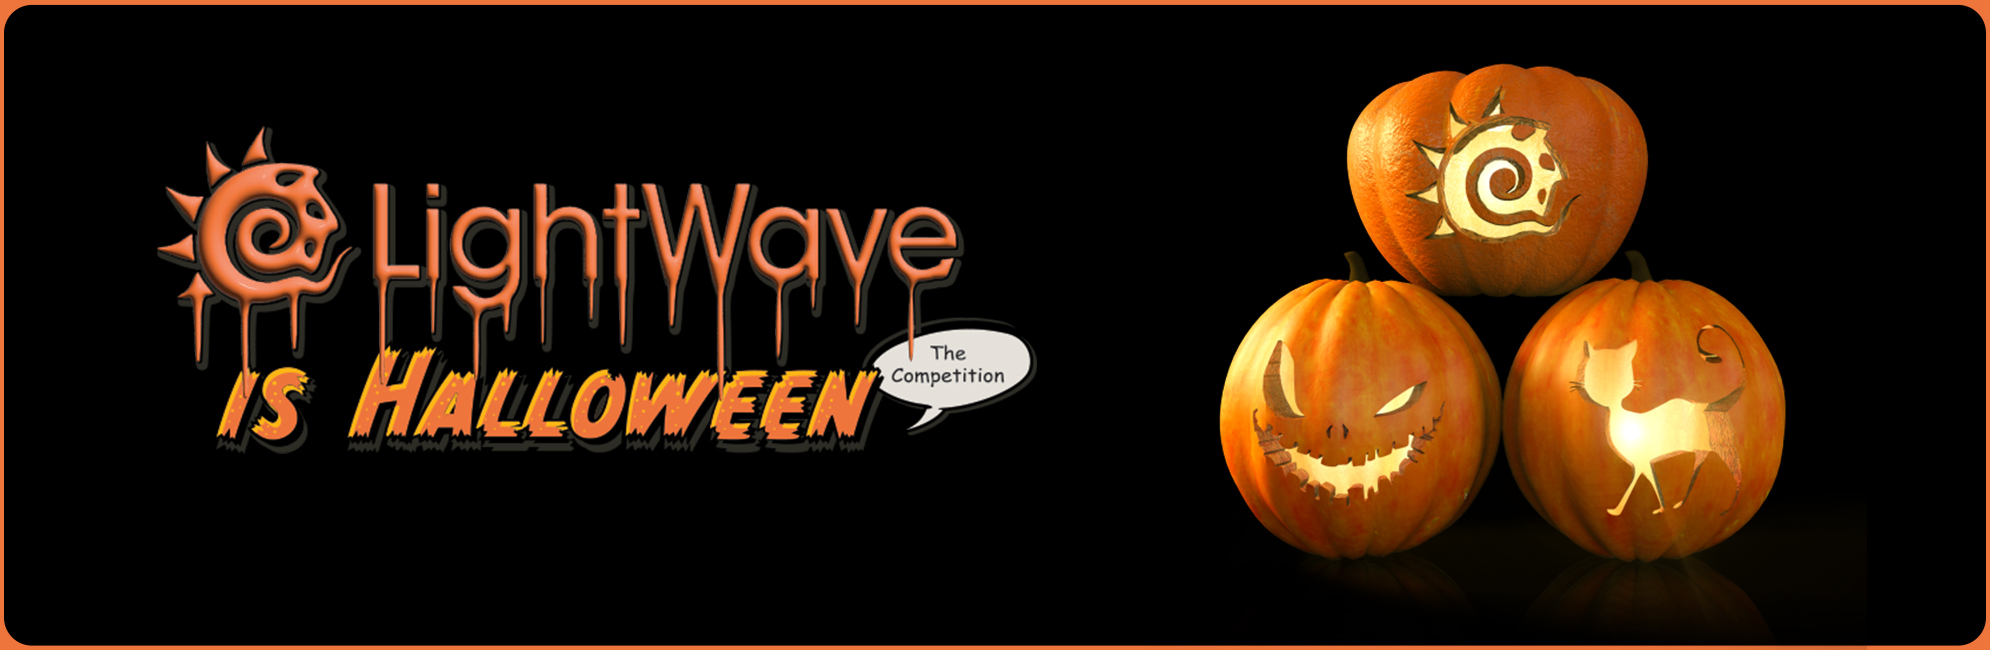 Nome: LightWave is Halloween  LightWave 3D Promo 20320918.jpg
Visite: 64
Dimensione: 387.4 KB